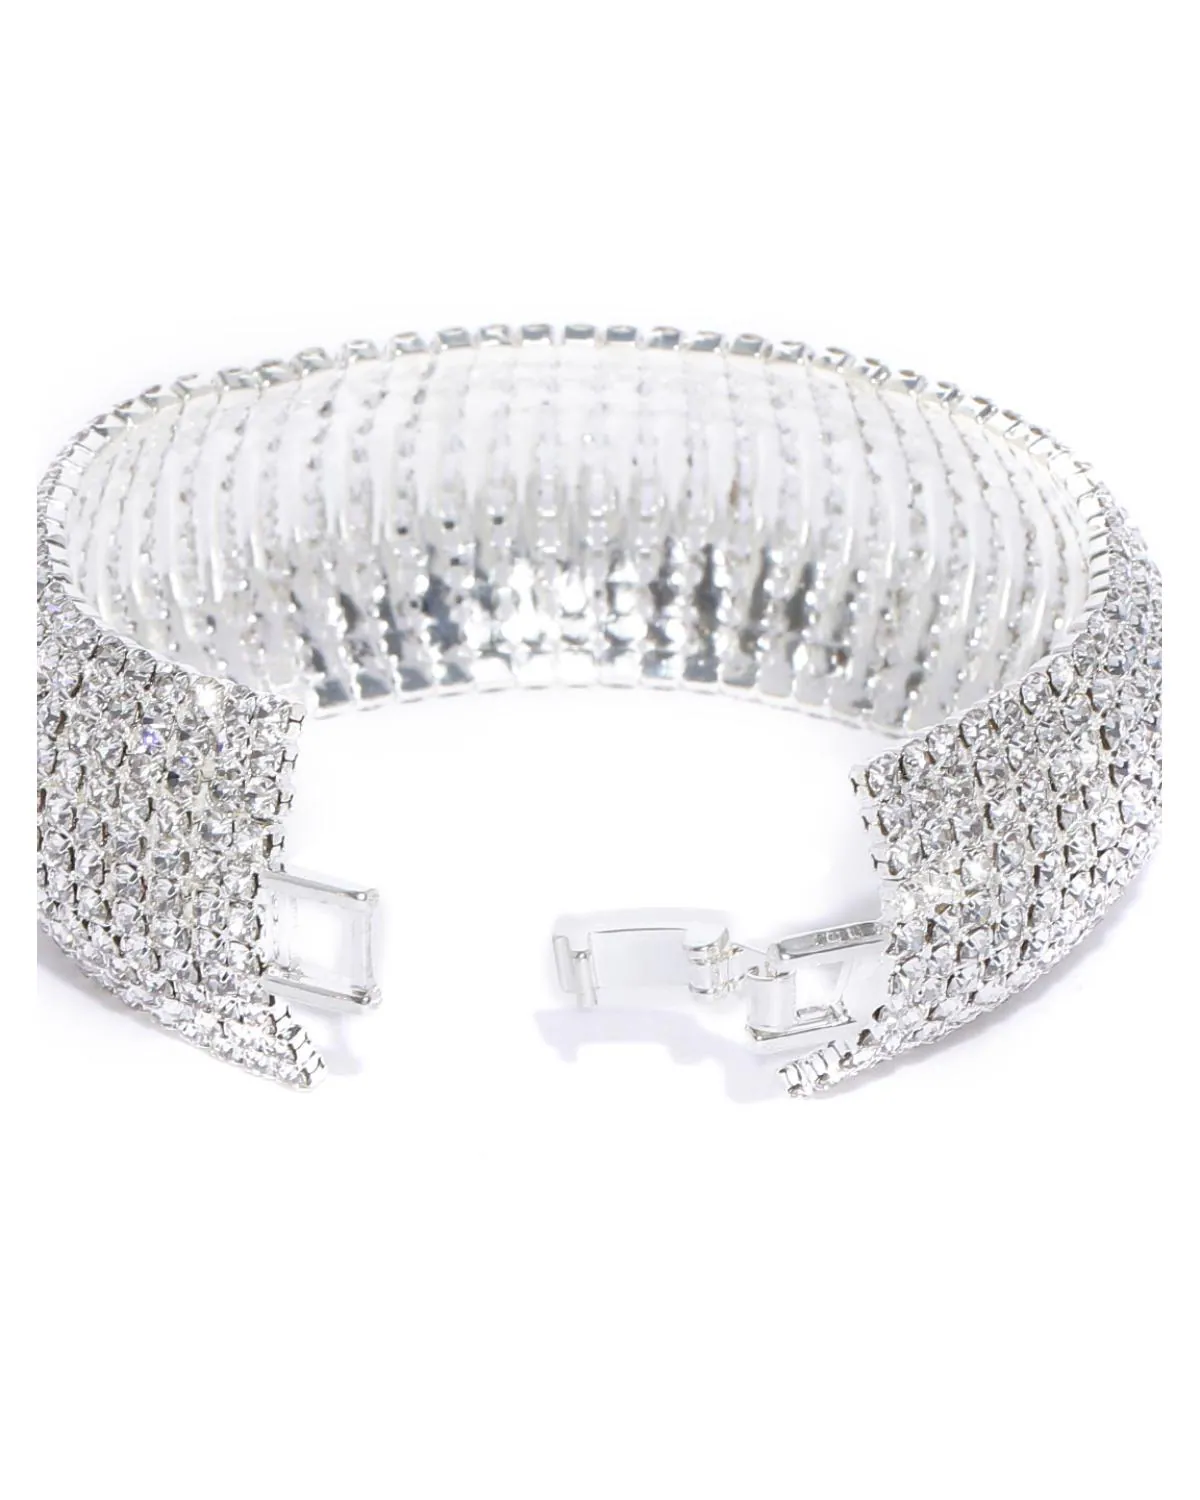 Buy YouBella Women's Fashion Stylish Latest Design Bracelet